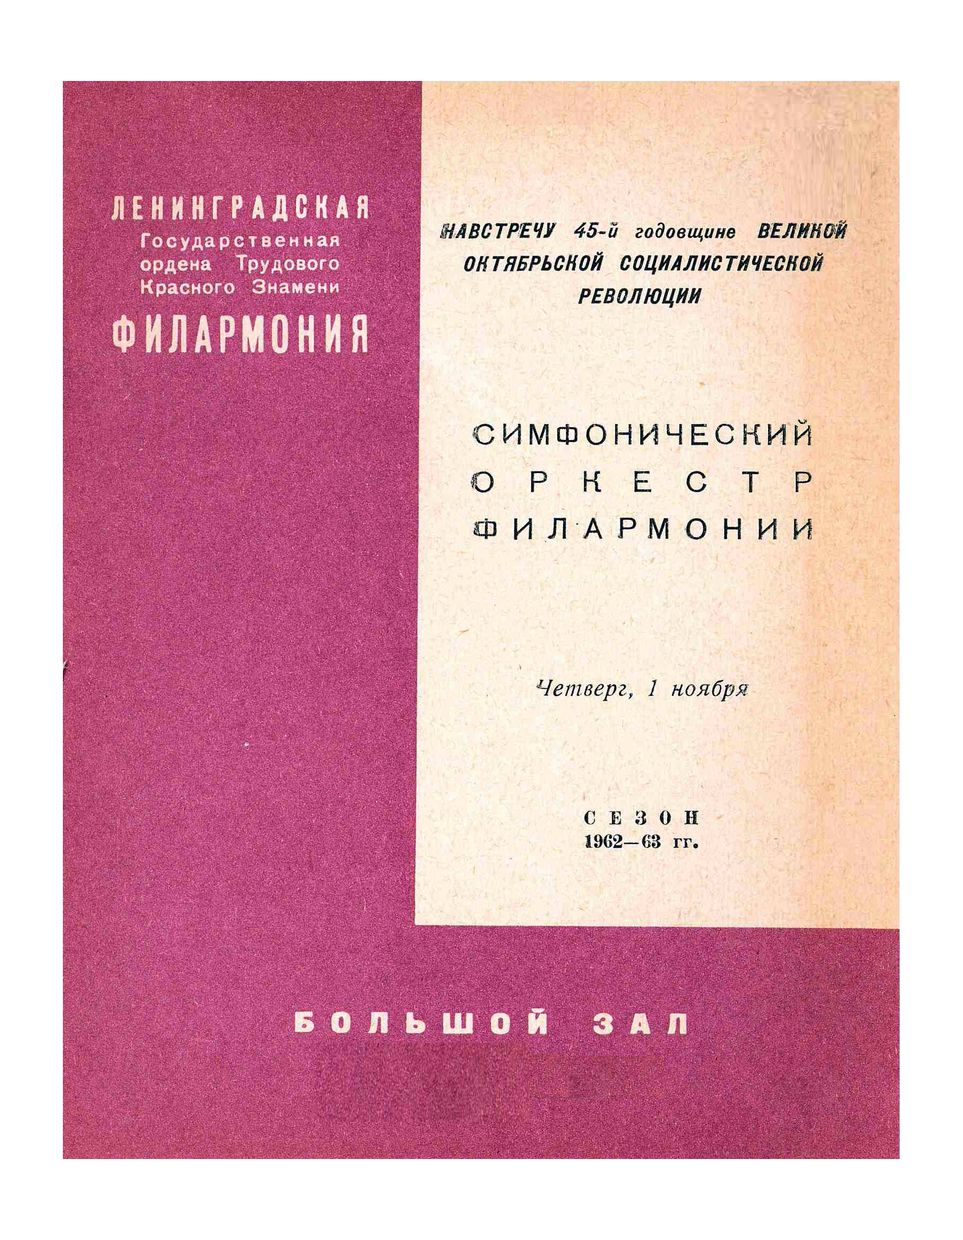 Вечер советской симфонической музыки
Дирижер – Арвид Янсонс